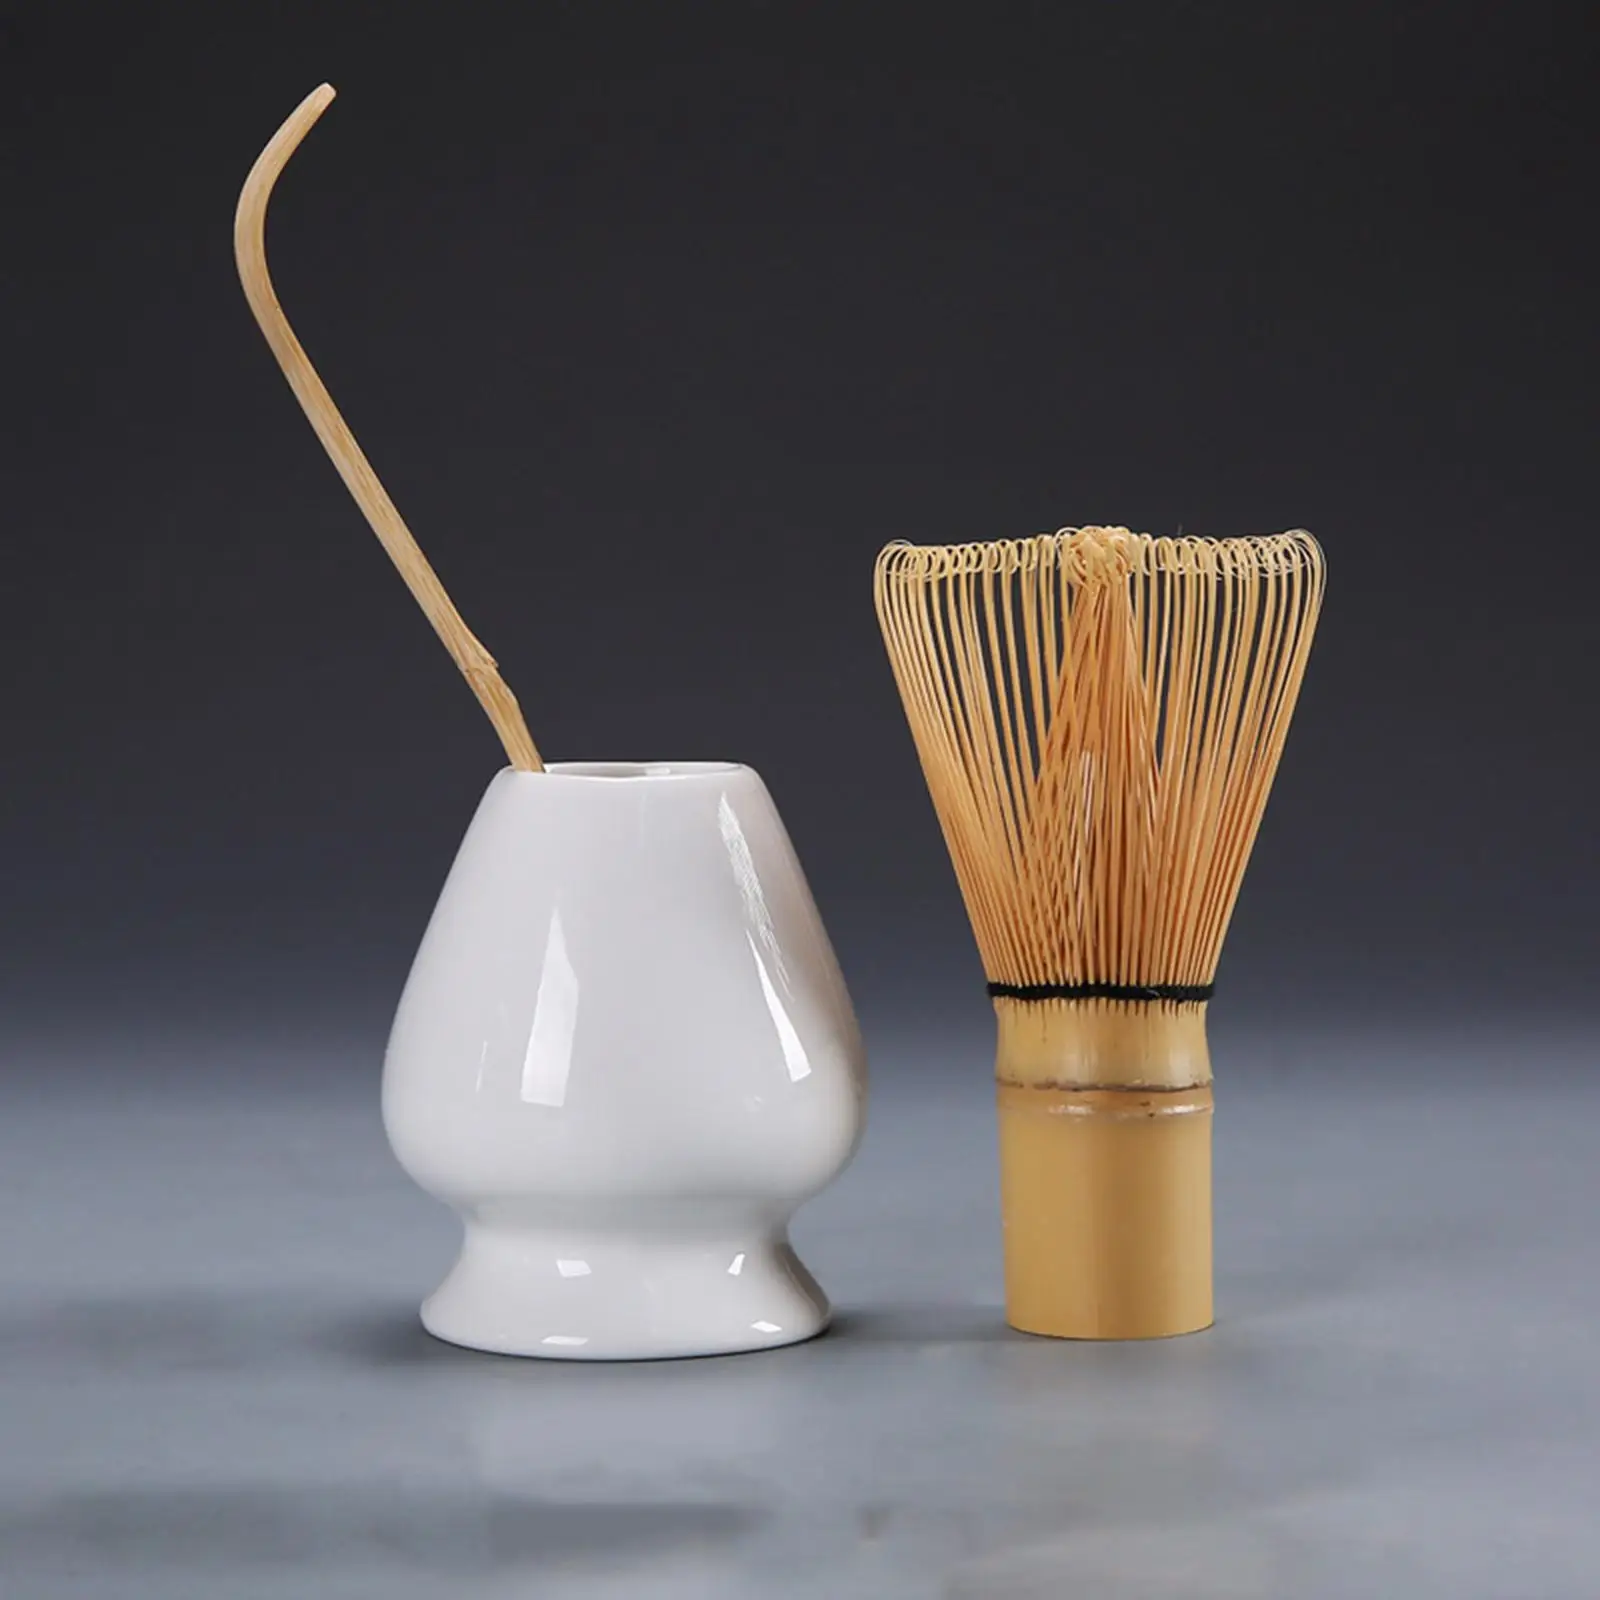 Japanese Matcha Set Matcha Whisk Bamboo Whisk Ceramic Whisk Holder Traditional